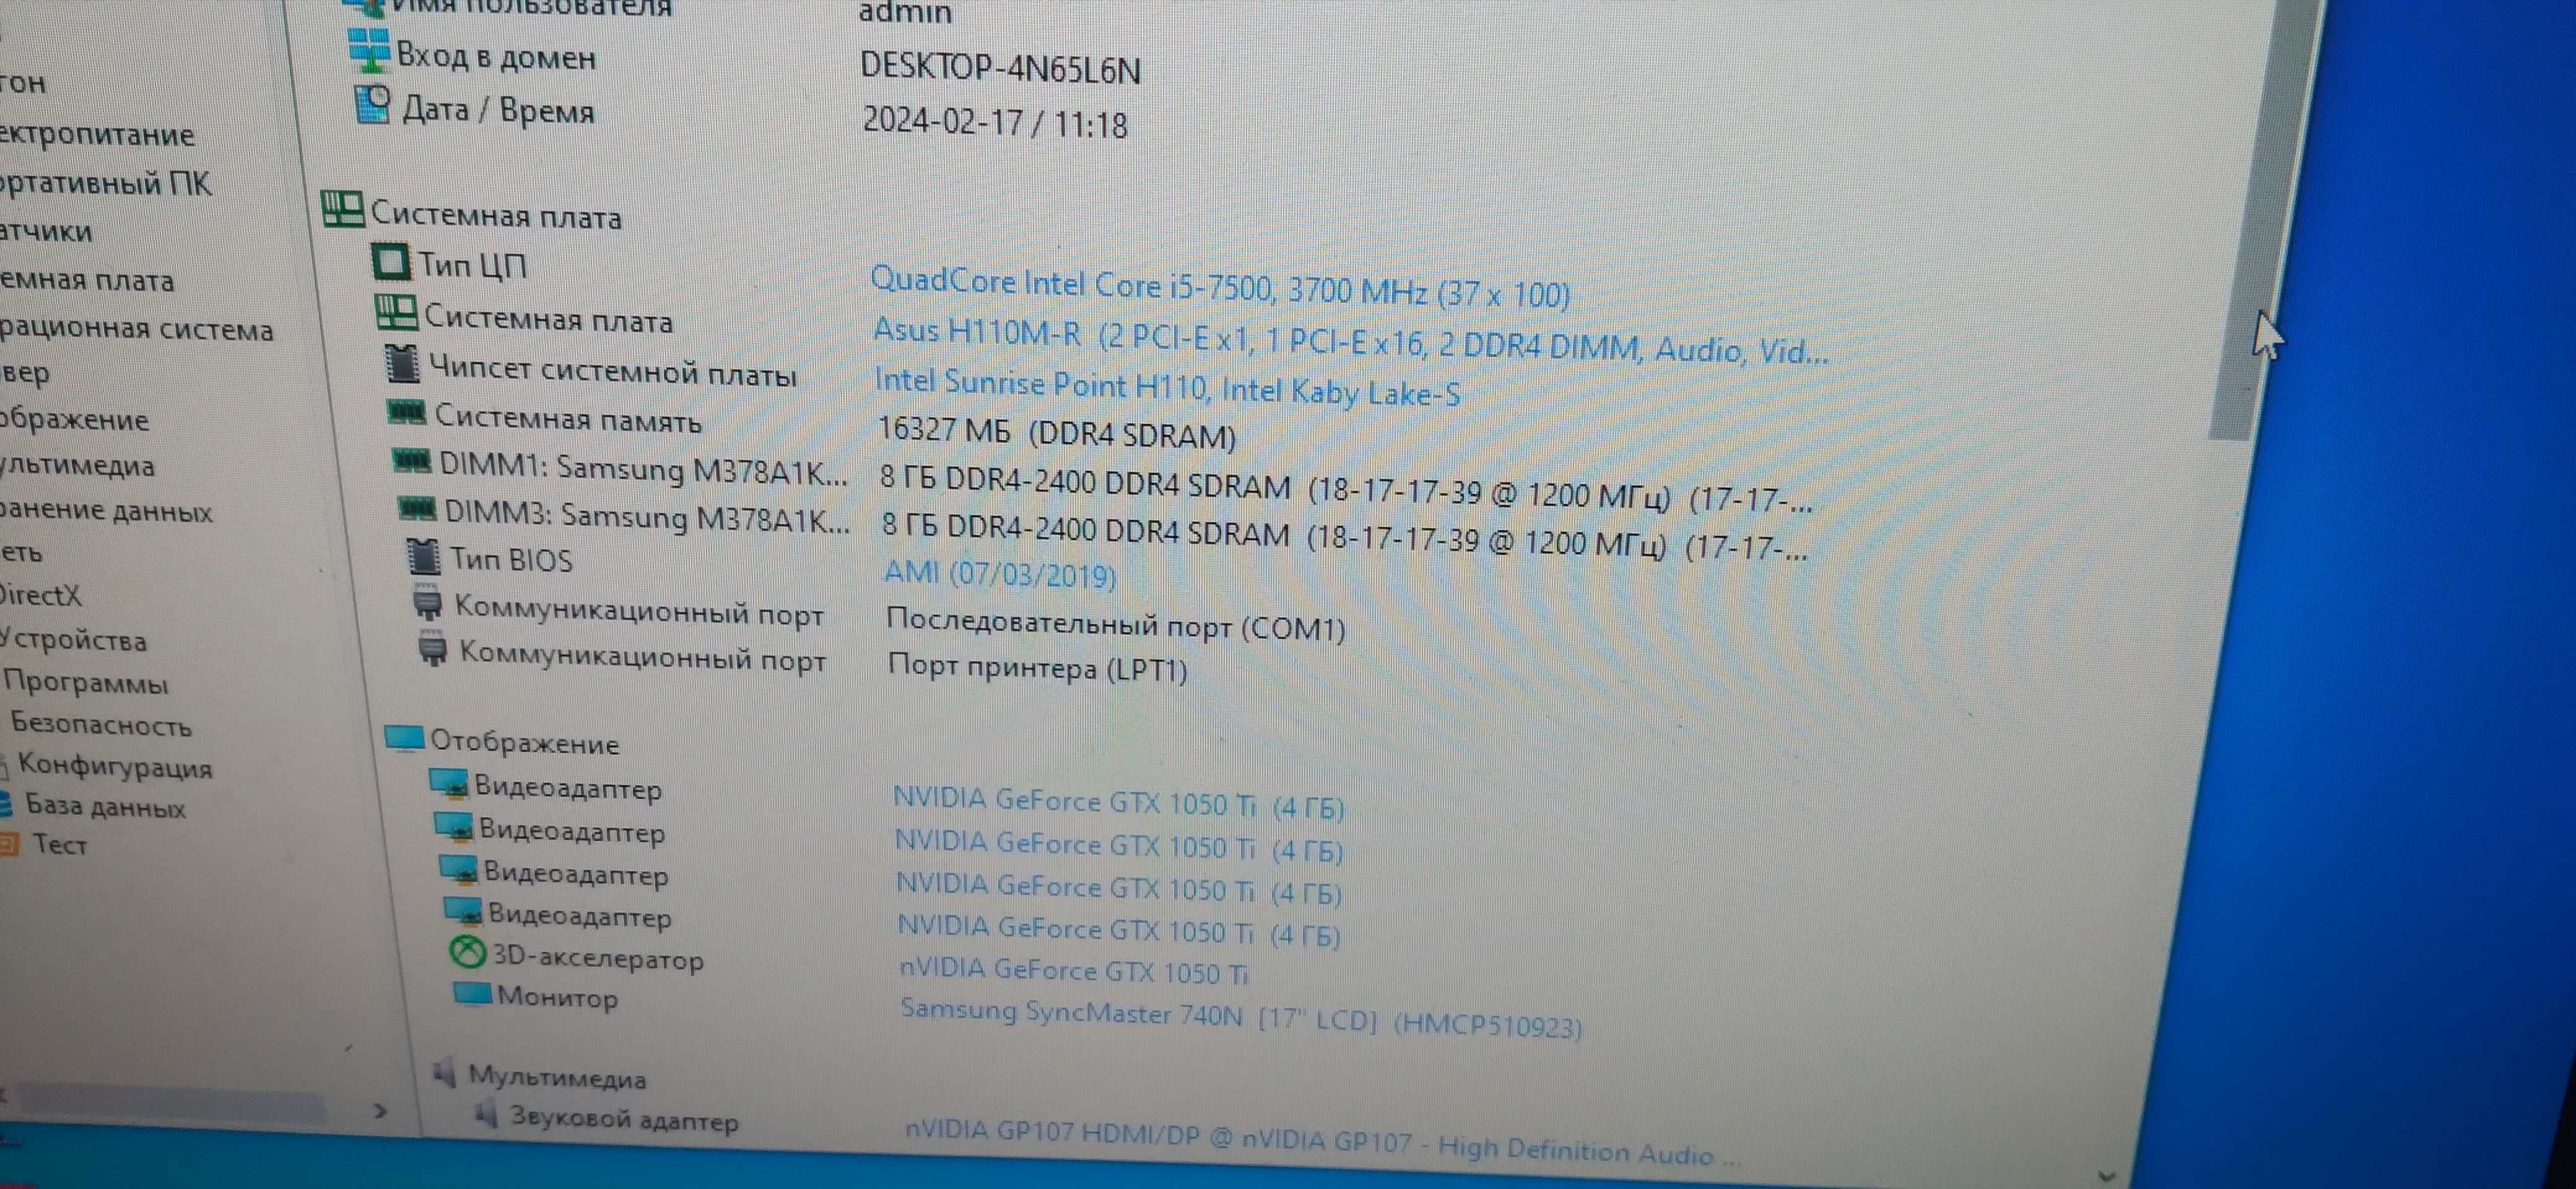 Системный блок I5-7500/1050TI 4gb/16 gb озу/SSD 128 GB/HDD 500 GB